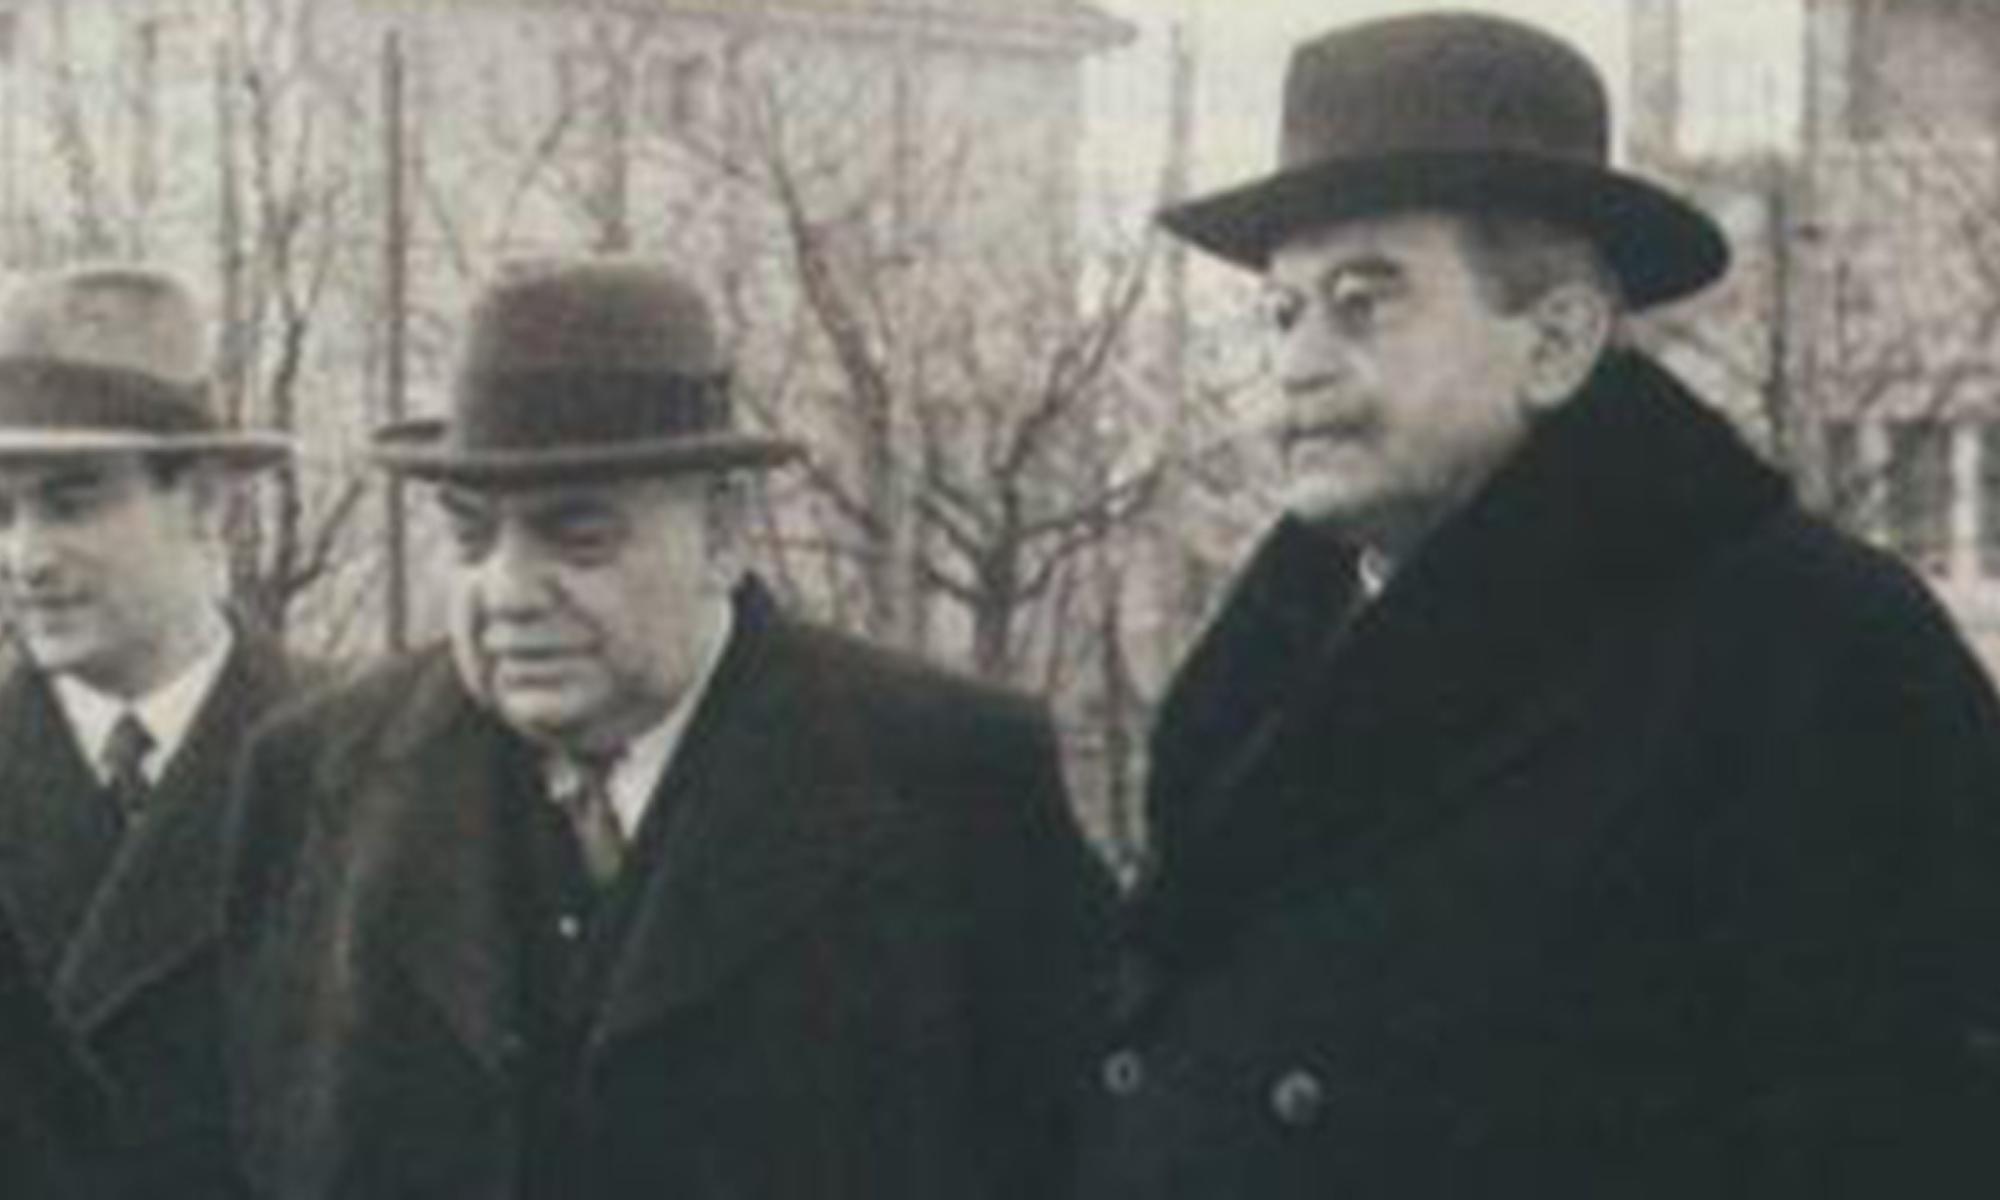 Bezirksapostel Hartmann (Mitte) und Stammapostel J.G. Bischoff (rechts) 
1935 in Mannheim